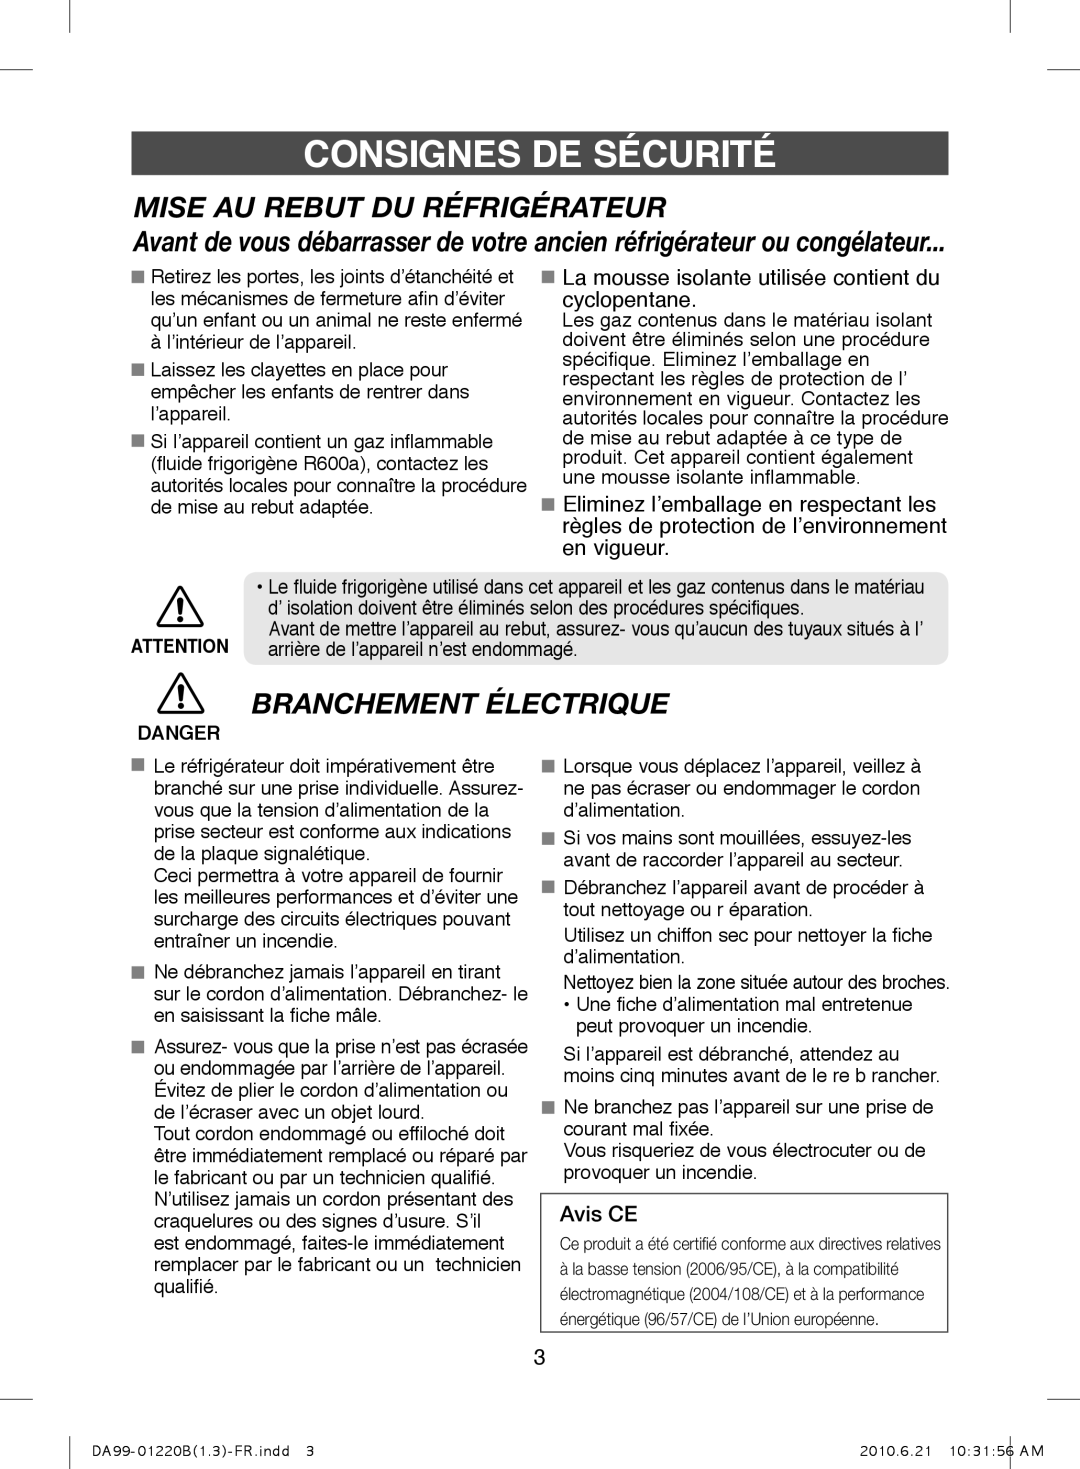 Samsung RL41PCIH1/XEF manual Mise Au Rebut Du Réfrigérateur, Branchement Électrique, Avis CE, Consignes De Sécurité, Danger 